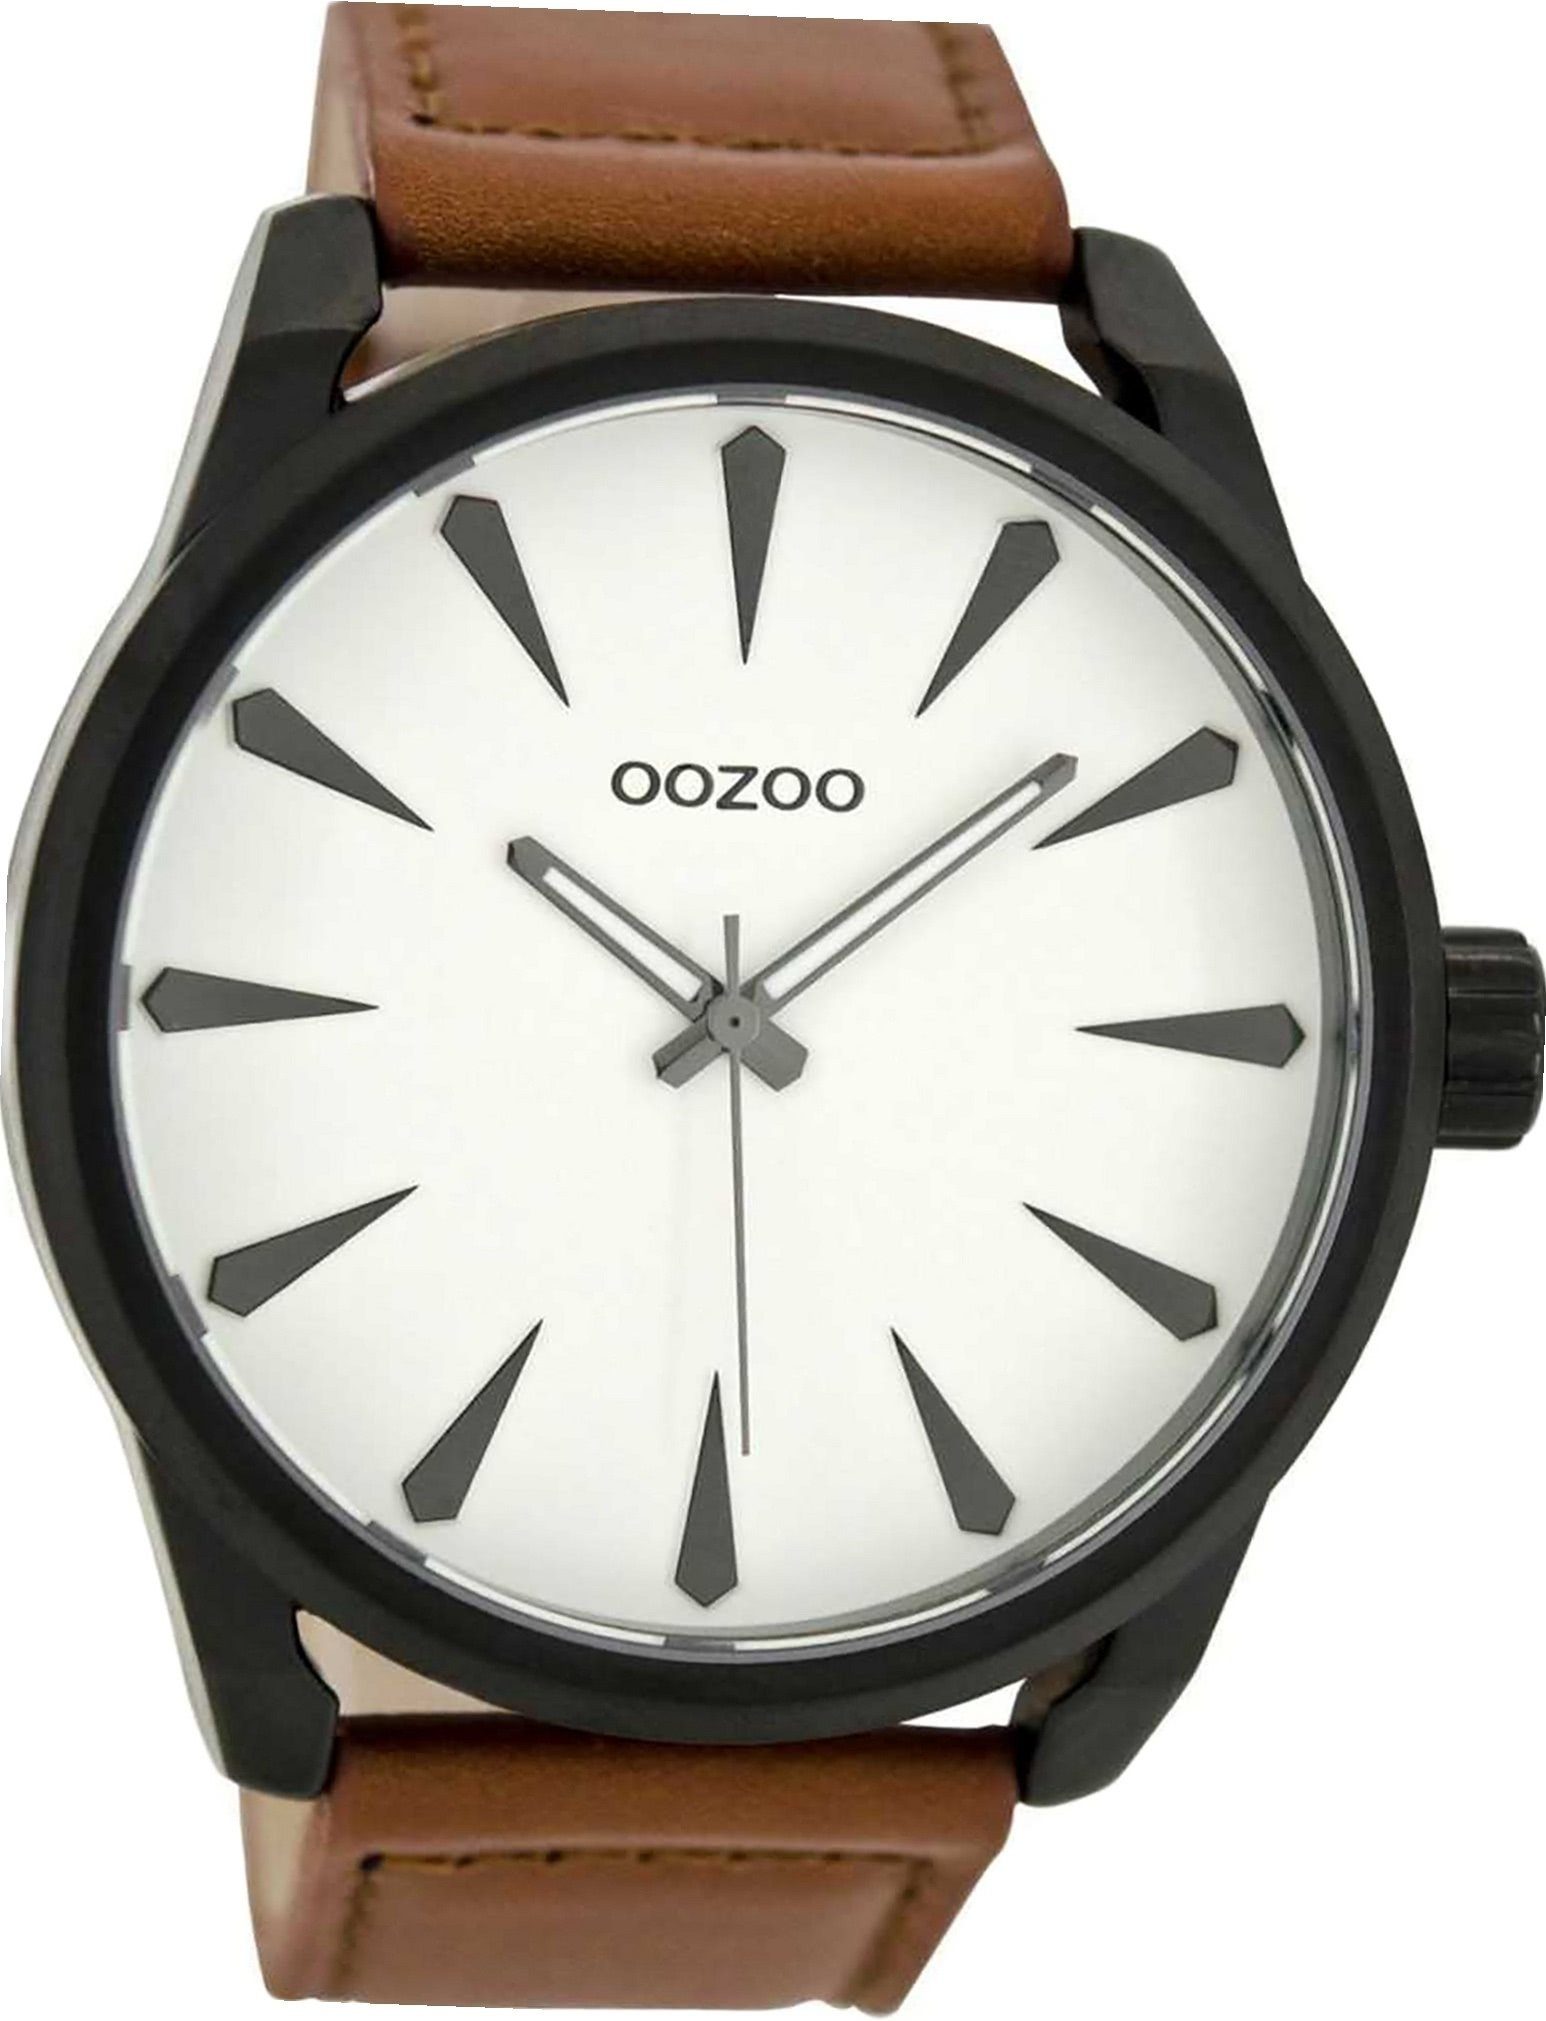 extra (ca. Oozoo C8226 Leder Herren Uhr rundes 48mm) braun, Herrenuhr Lederarmband OOZOO groß Gehäuse, Quarzuhr Analog,